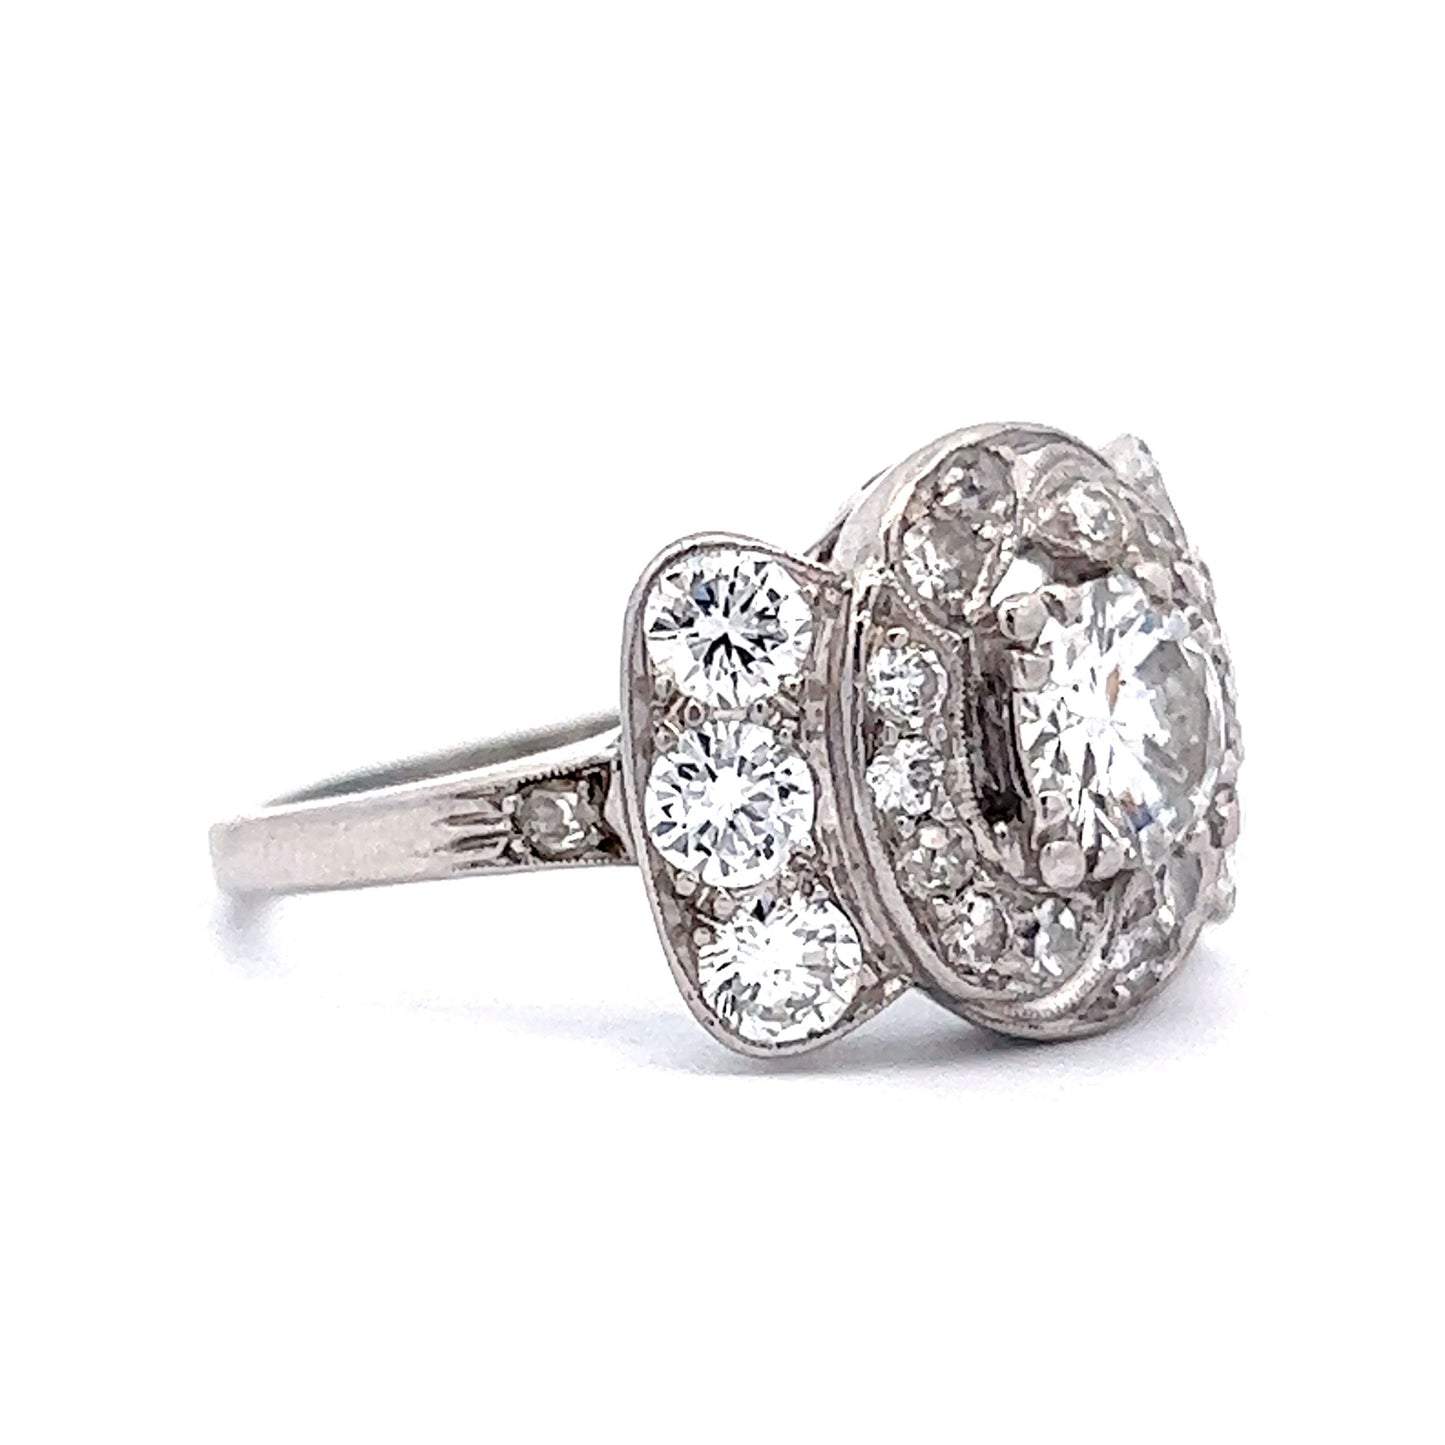 2.21 Art Deco Diamond Cocktail Ring in Platinum